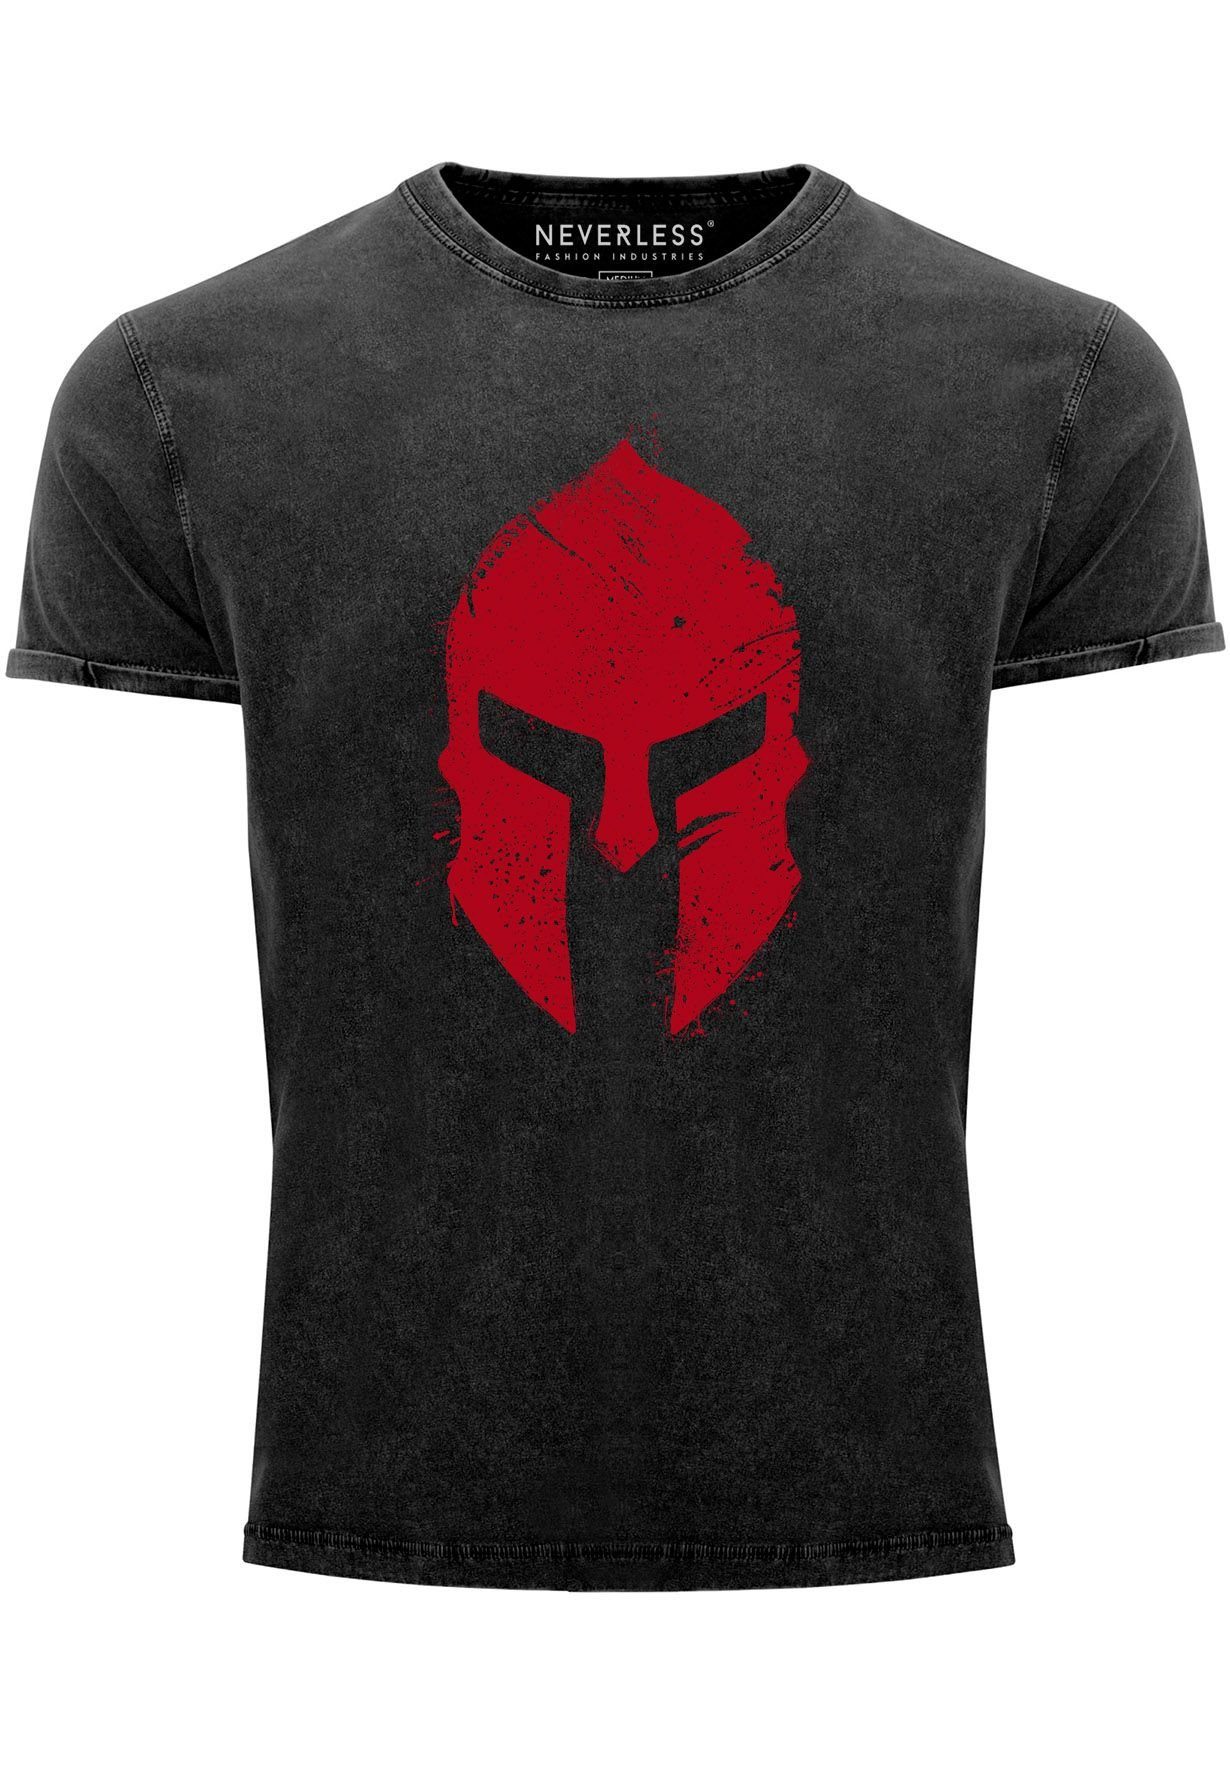 Herren schwarz-rot Sparta-Helm mit Neverless Krieger Print-Shirt Shirt Vintage Warr Aufdruck Gladiator Print Print